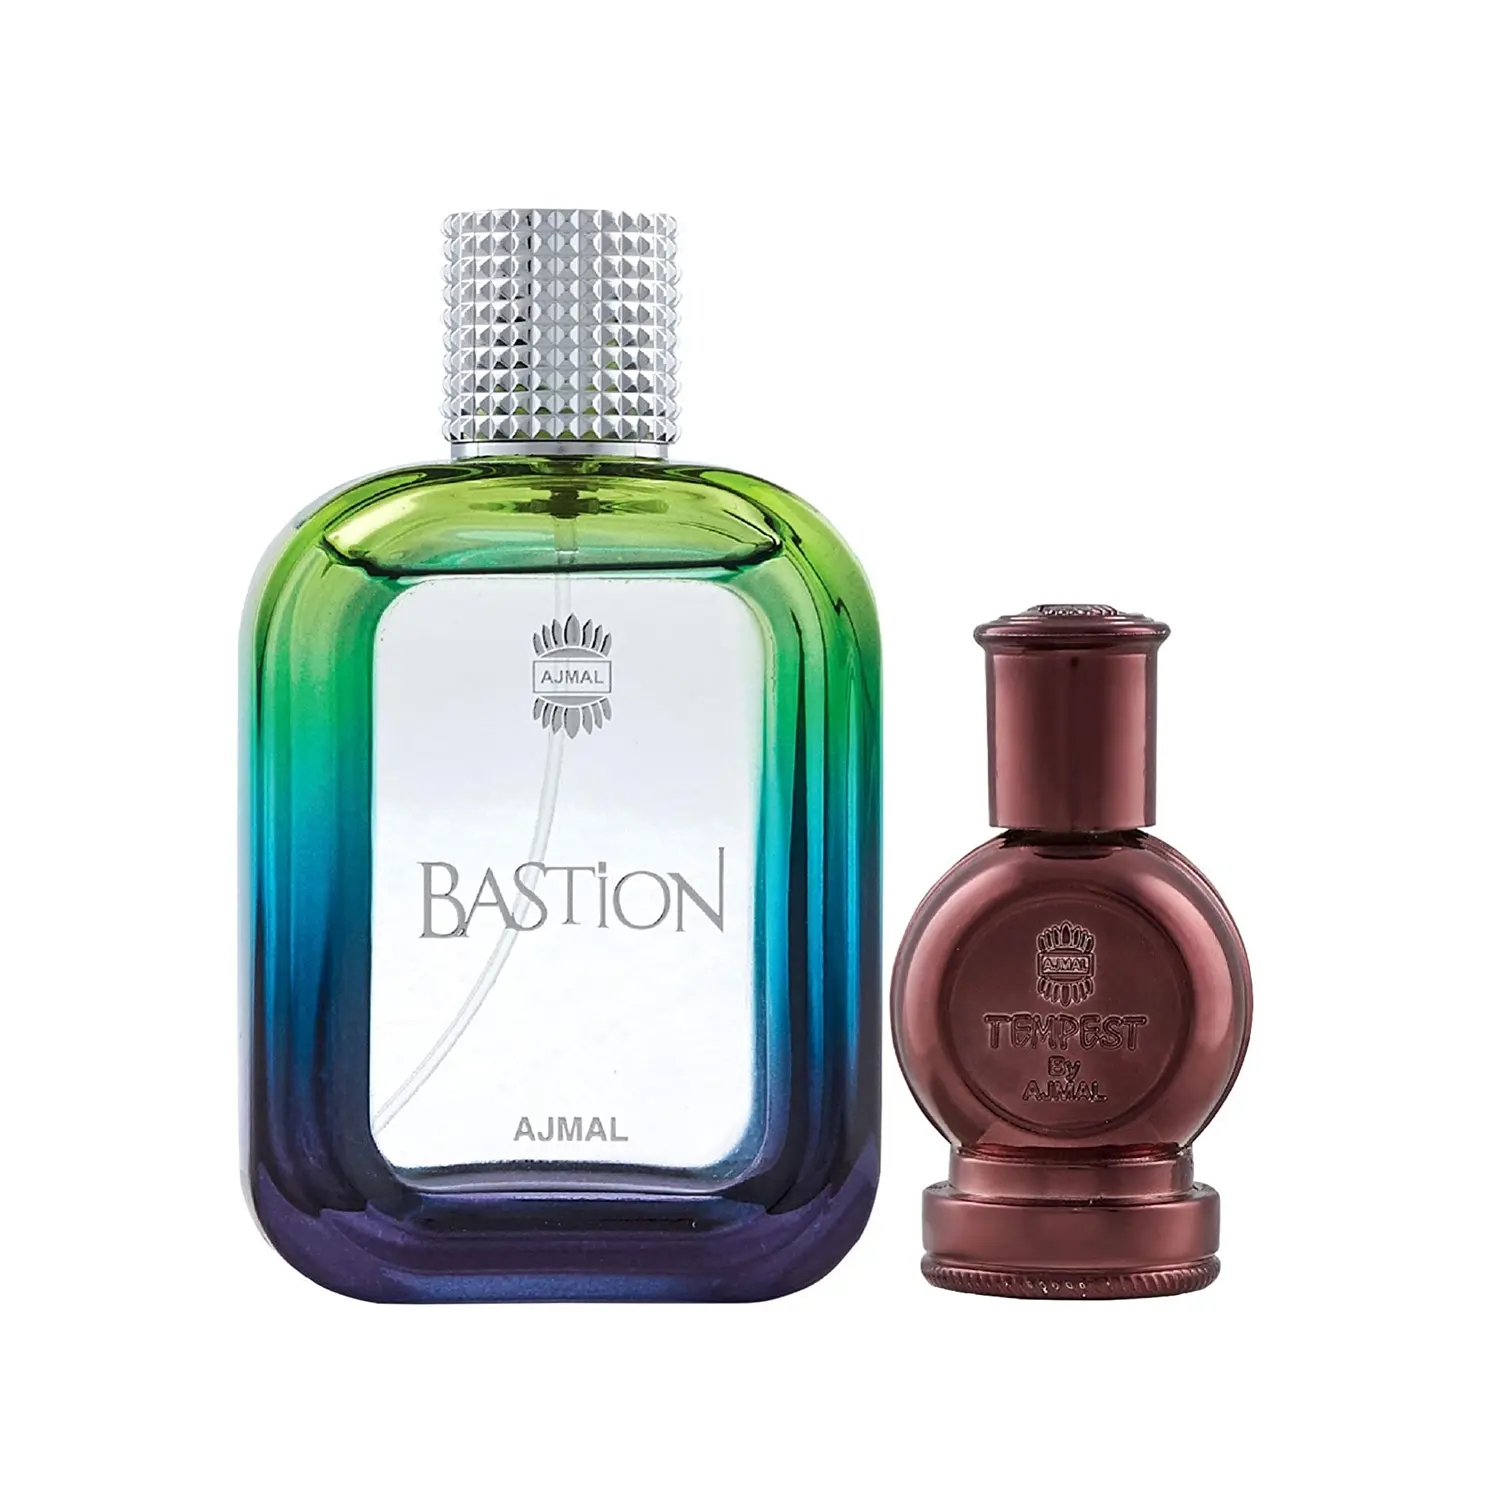 Ajmal Bastion Eau De Parfum And Tempest Concentrated Perfume Oil (2Pc)